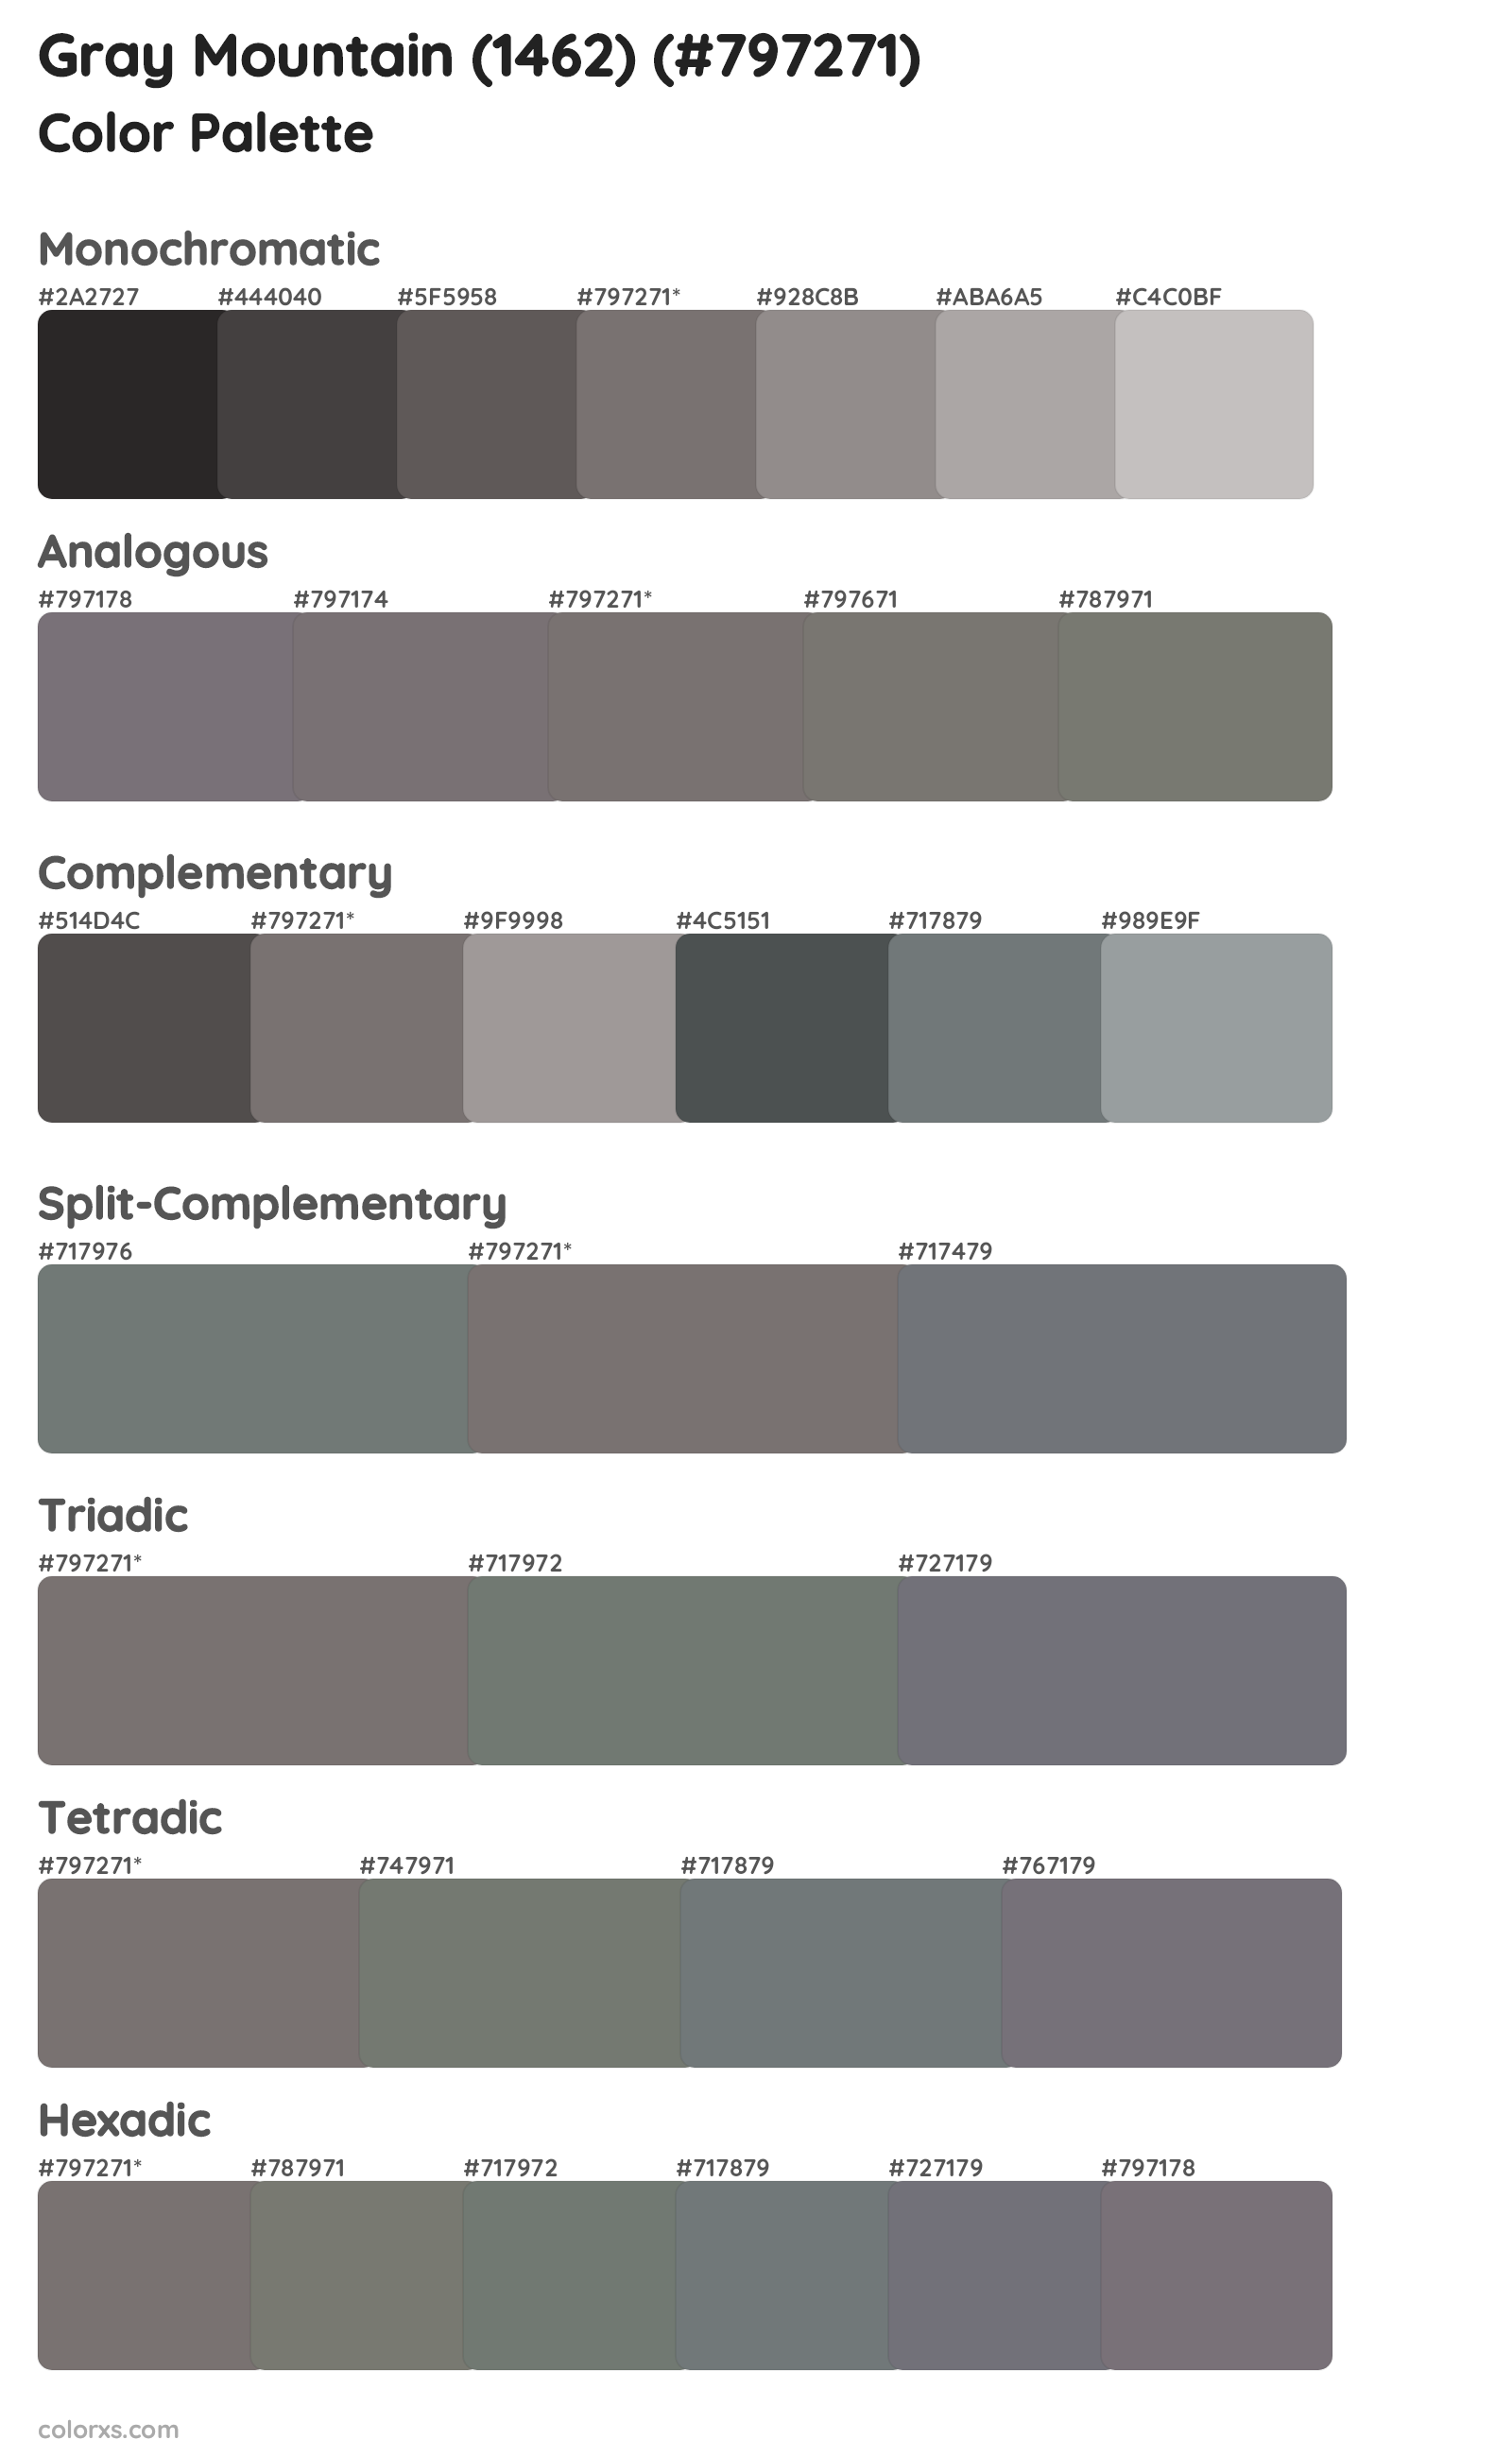 Gray Mountain (1462) Color Scheme Palettes